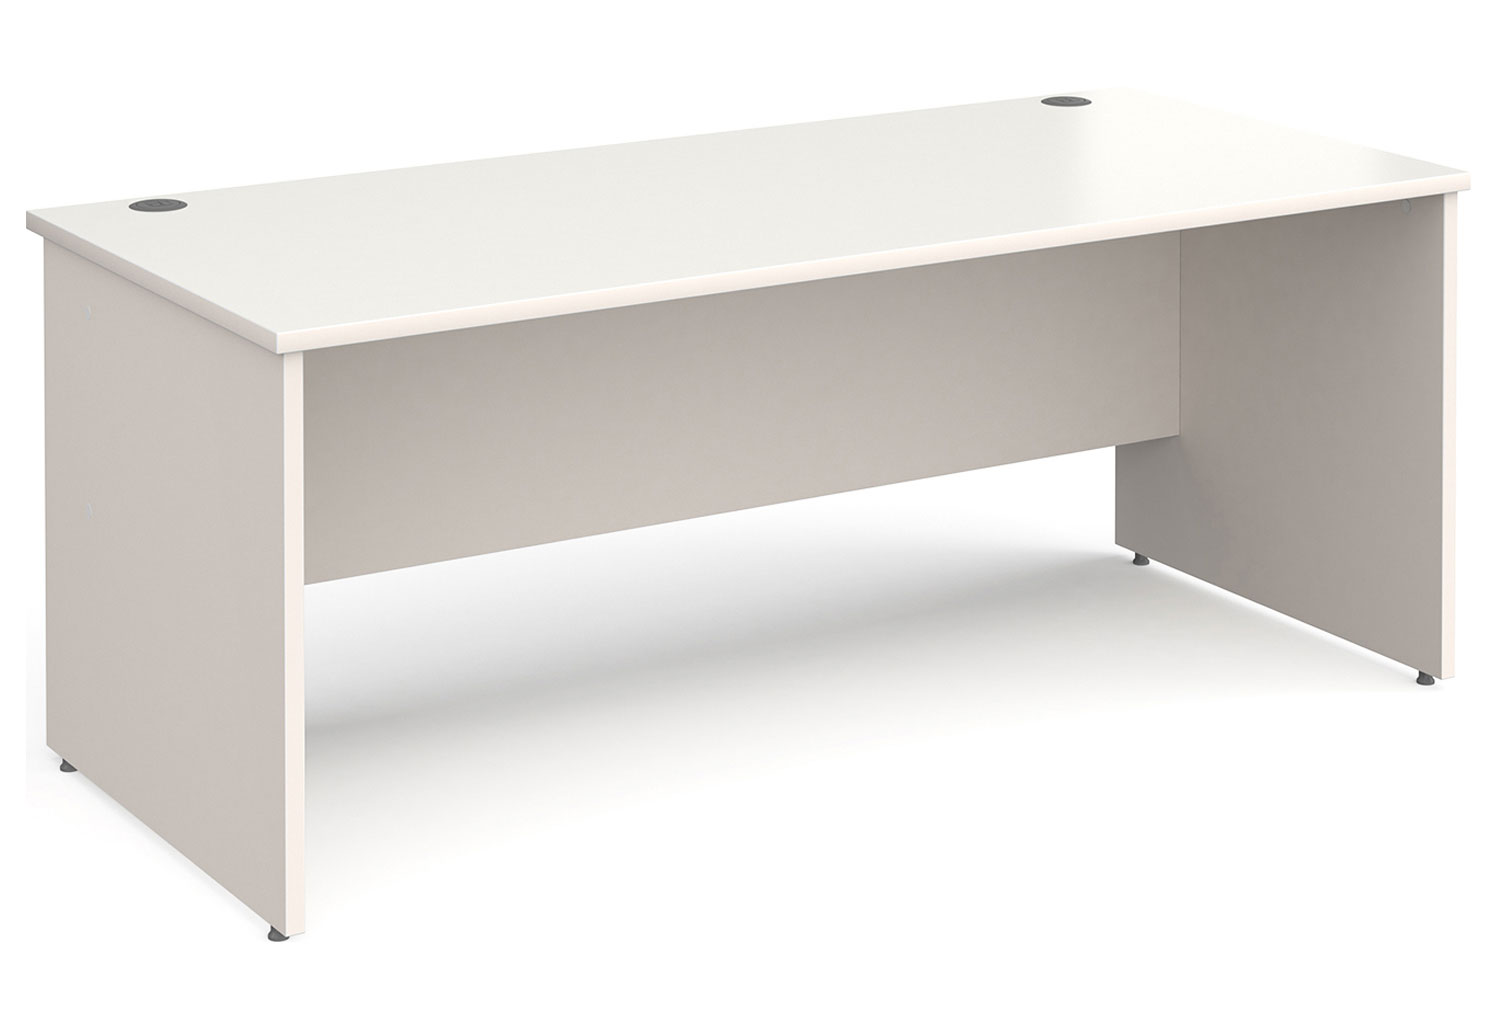 Tully Panel End Rectangular Office Desk, 180wx80dx73h (cm), White